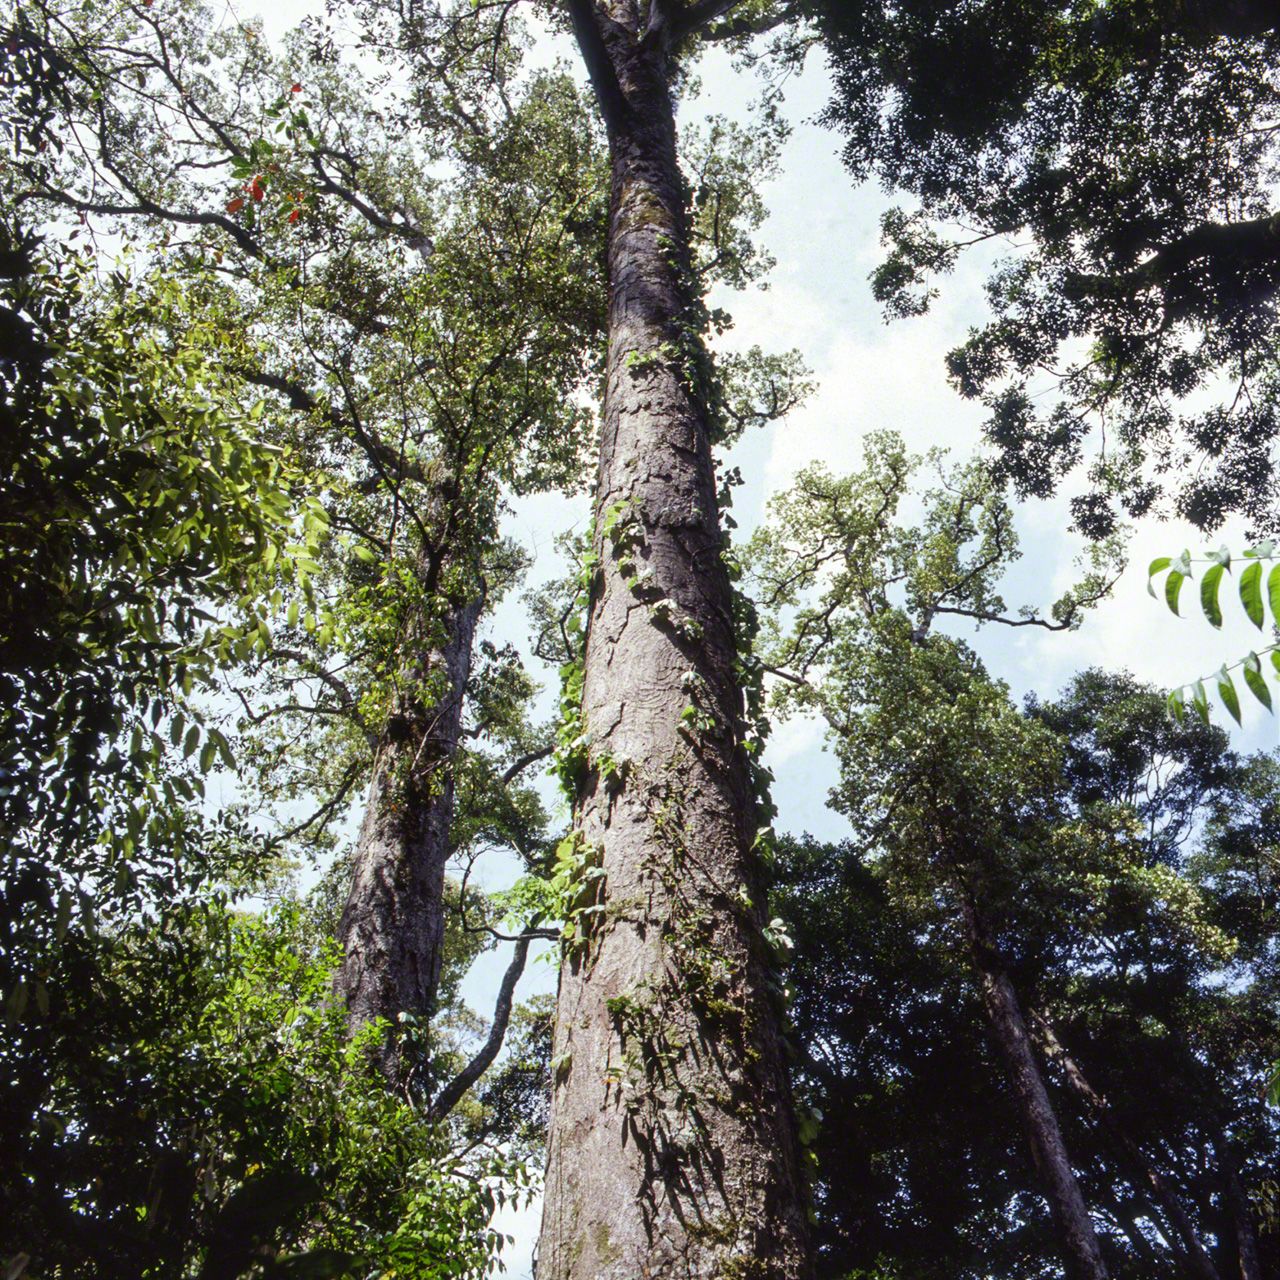 Un grand Ichiigashi, du genre Cyclobalanopsis, sous-genre de Quercus. Cet arbre est le meilleur représentant des grands arbres laurisylves. Son tronc porte peu de branches, et il peut atteindre 20 mètres de haut.